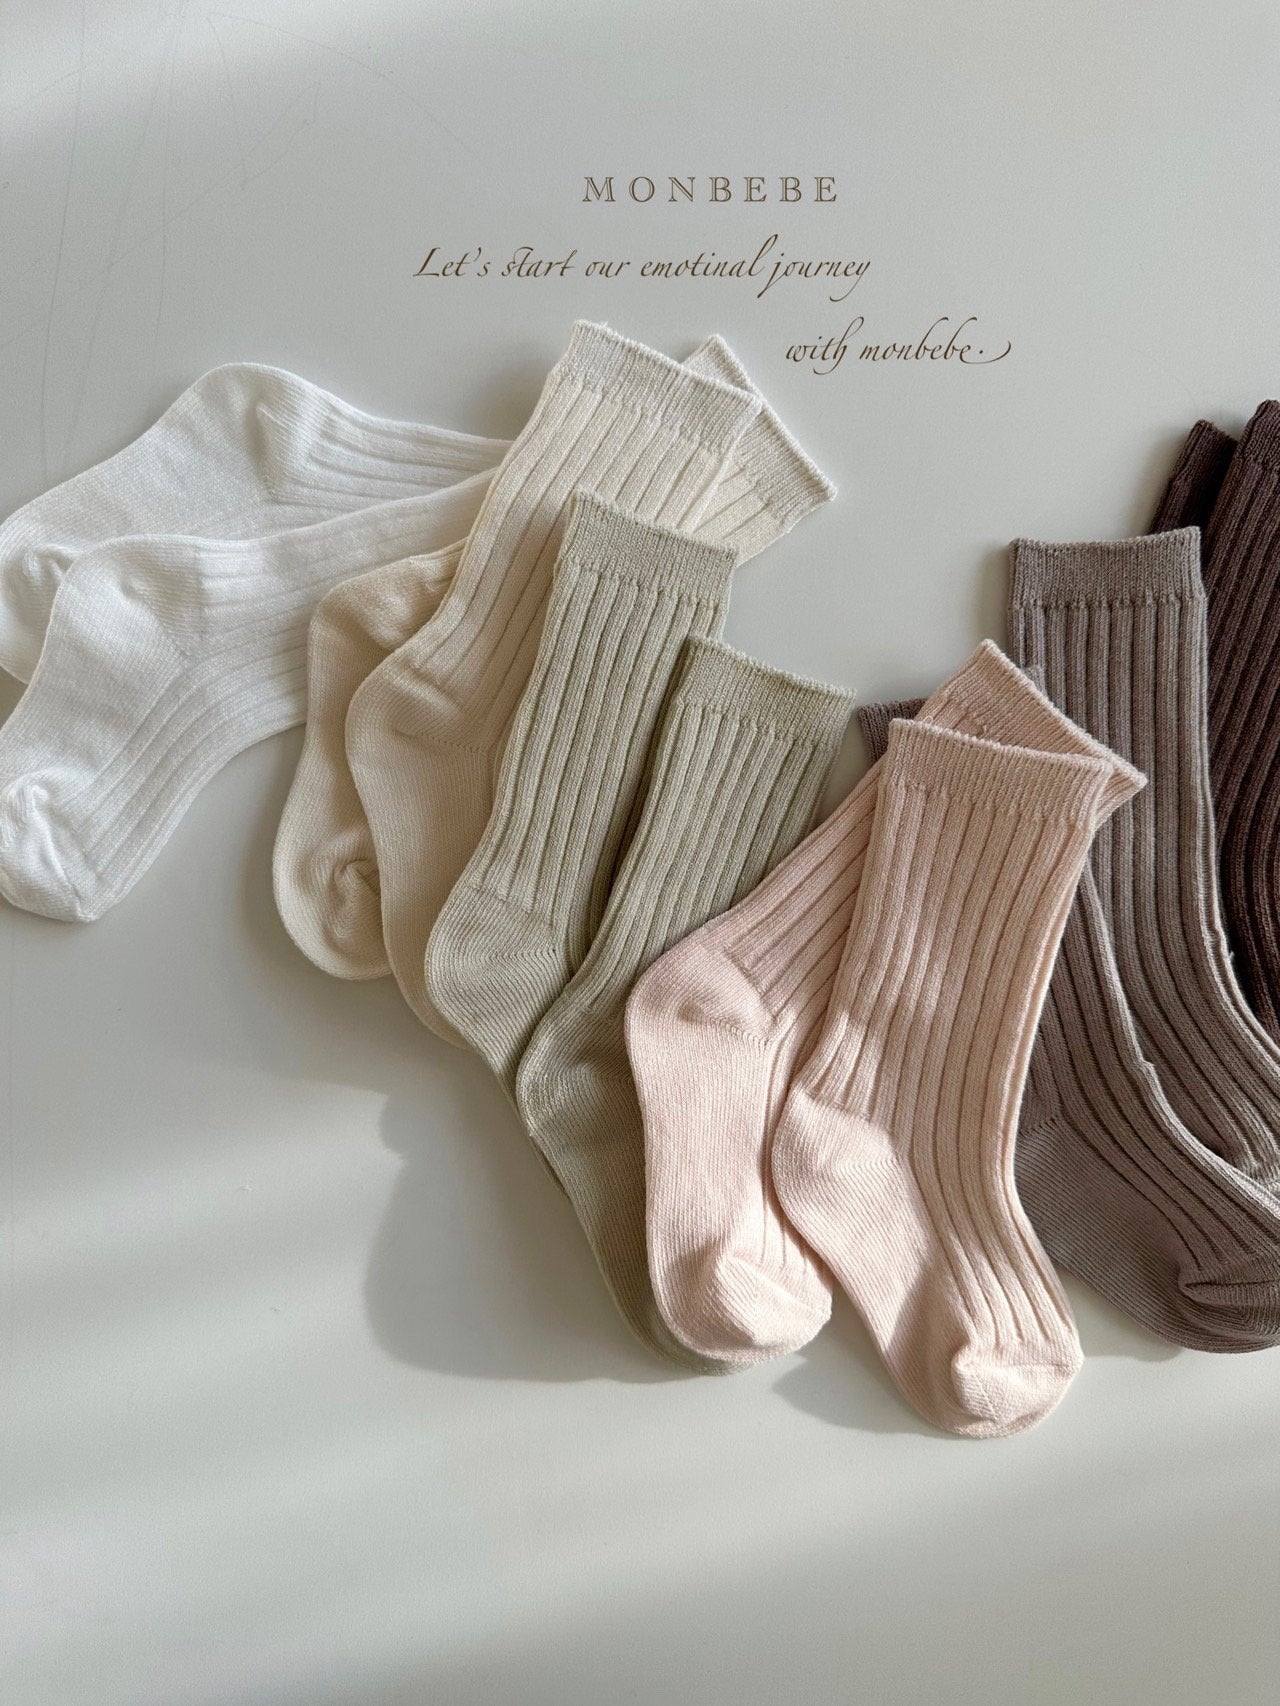 Ribbed socks - set of 6 pairs